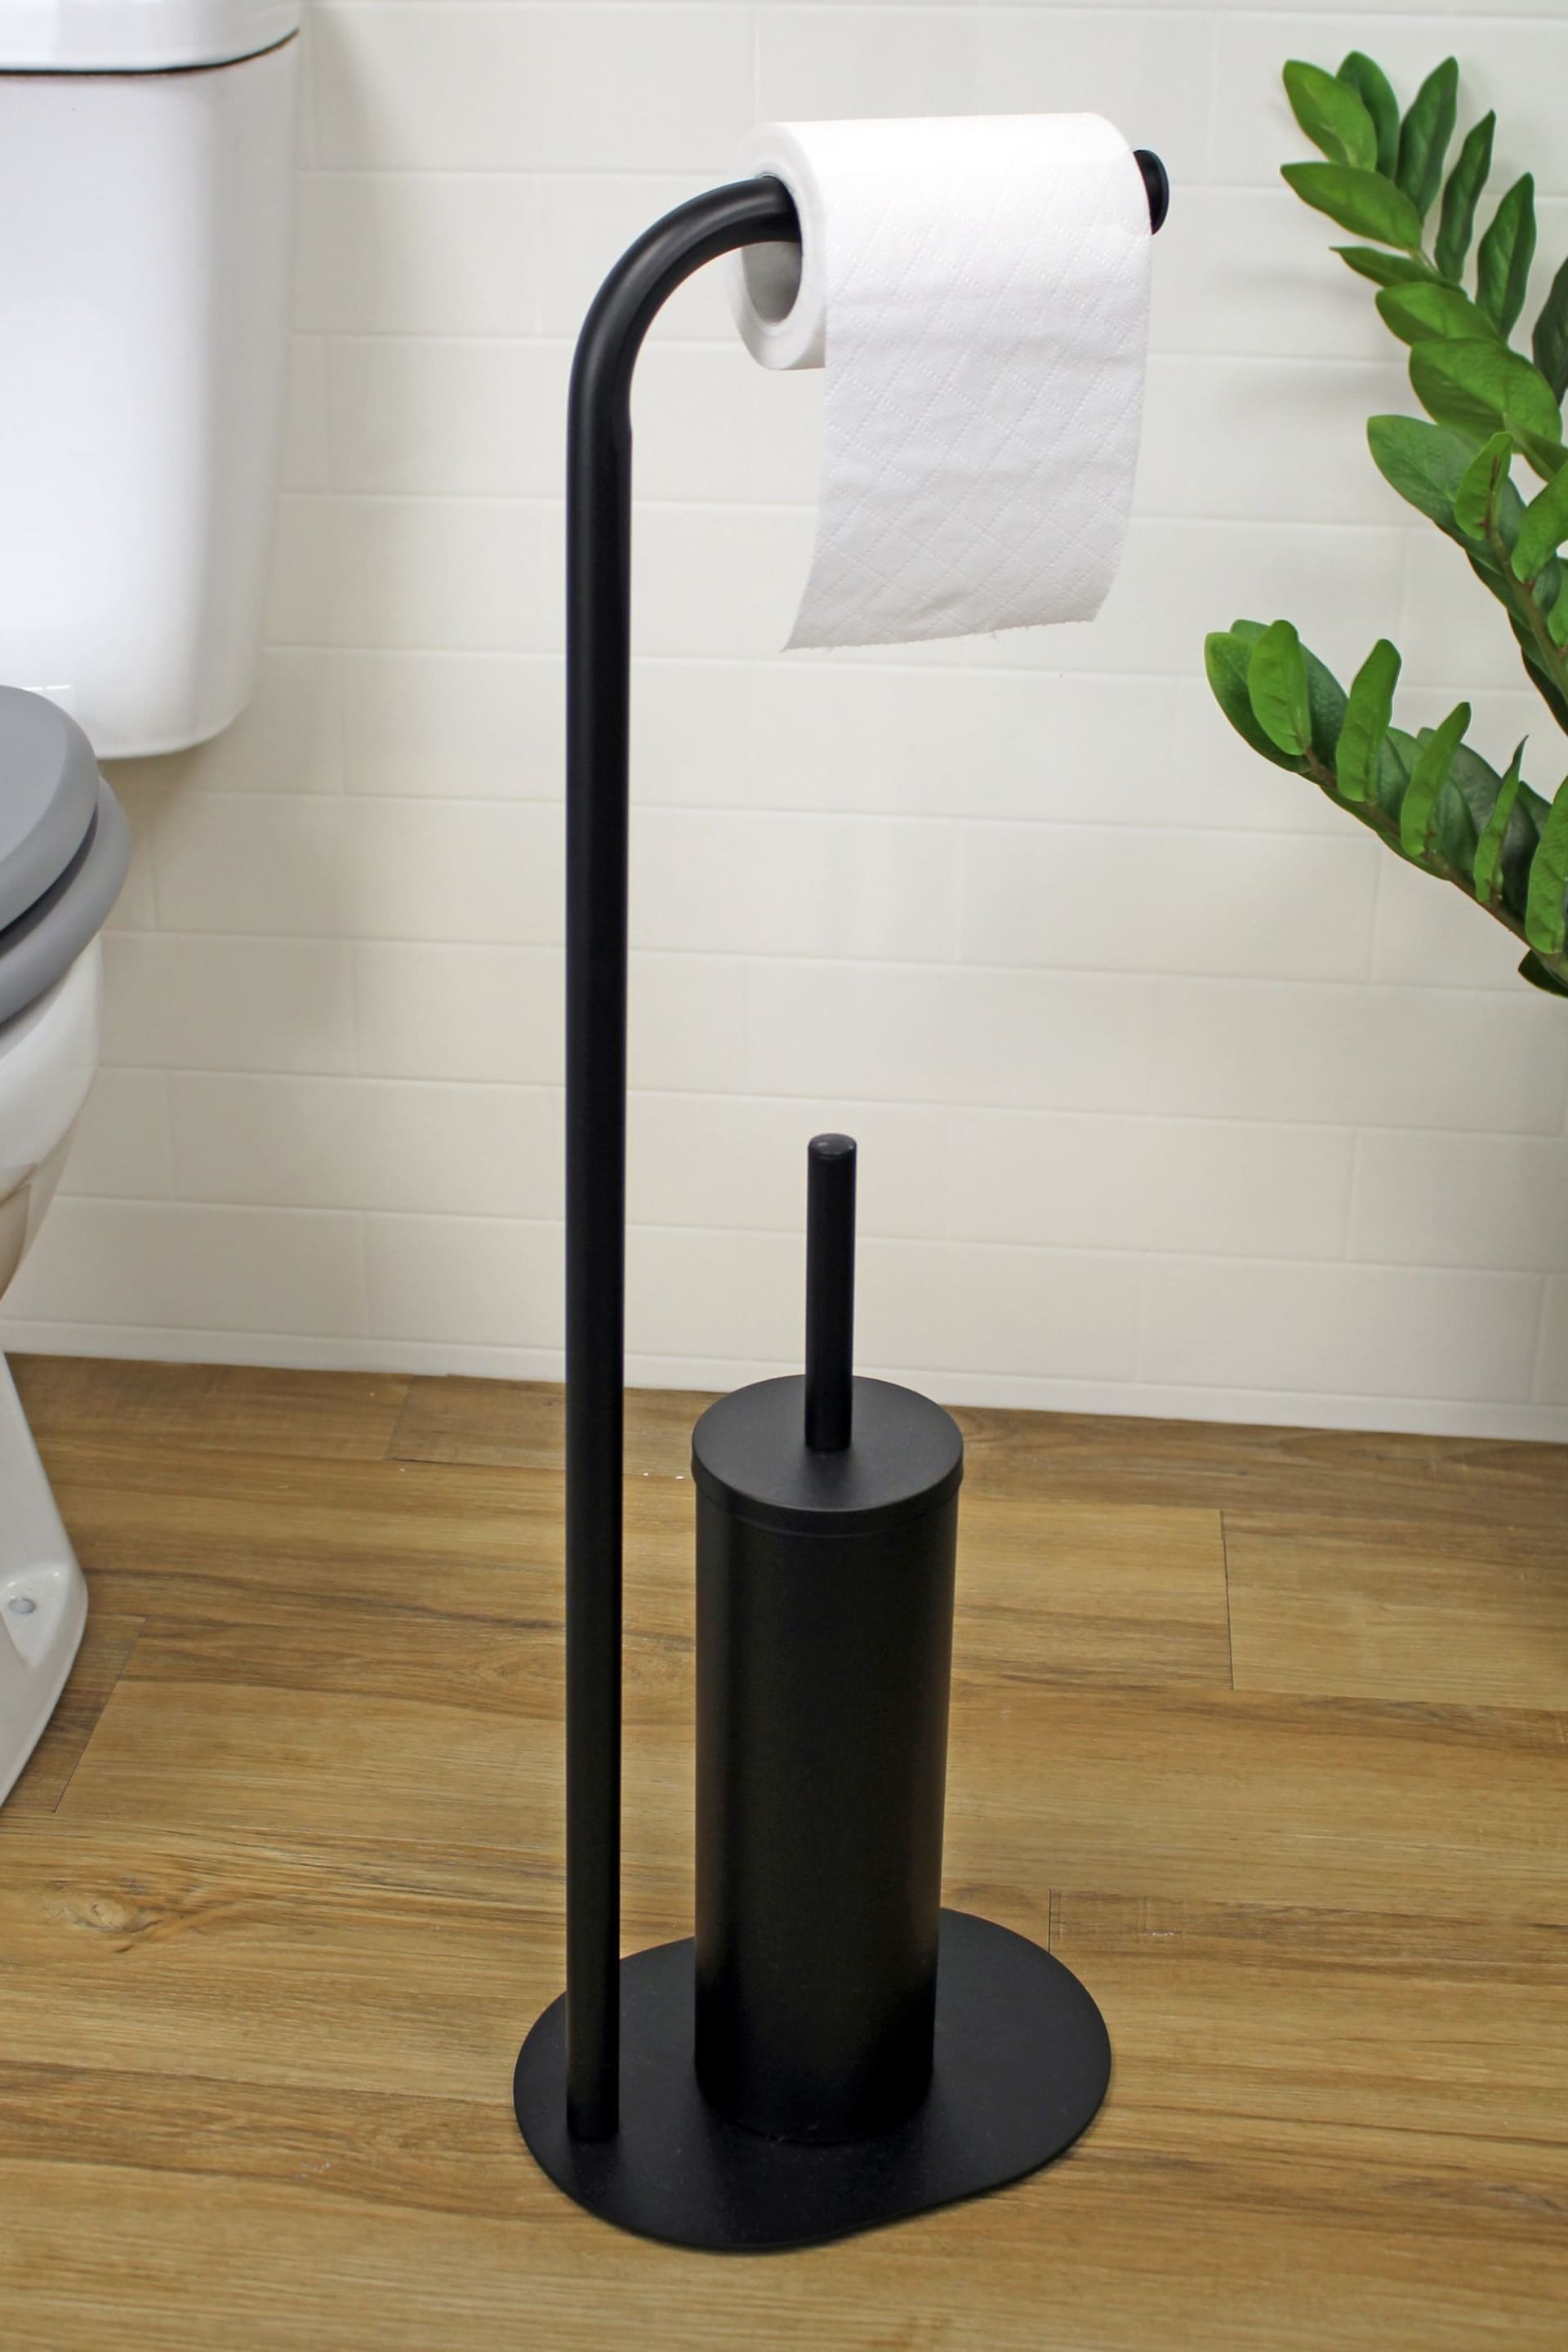 Showerdrape Black Aspen Freestanding Toilet Roll Holder and Brush Holder - Image 2 of 4